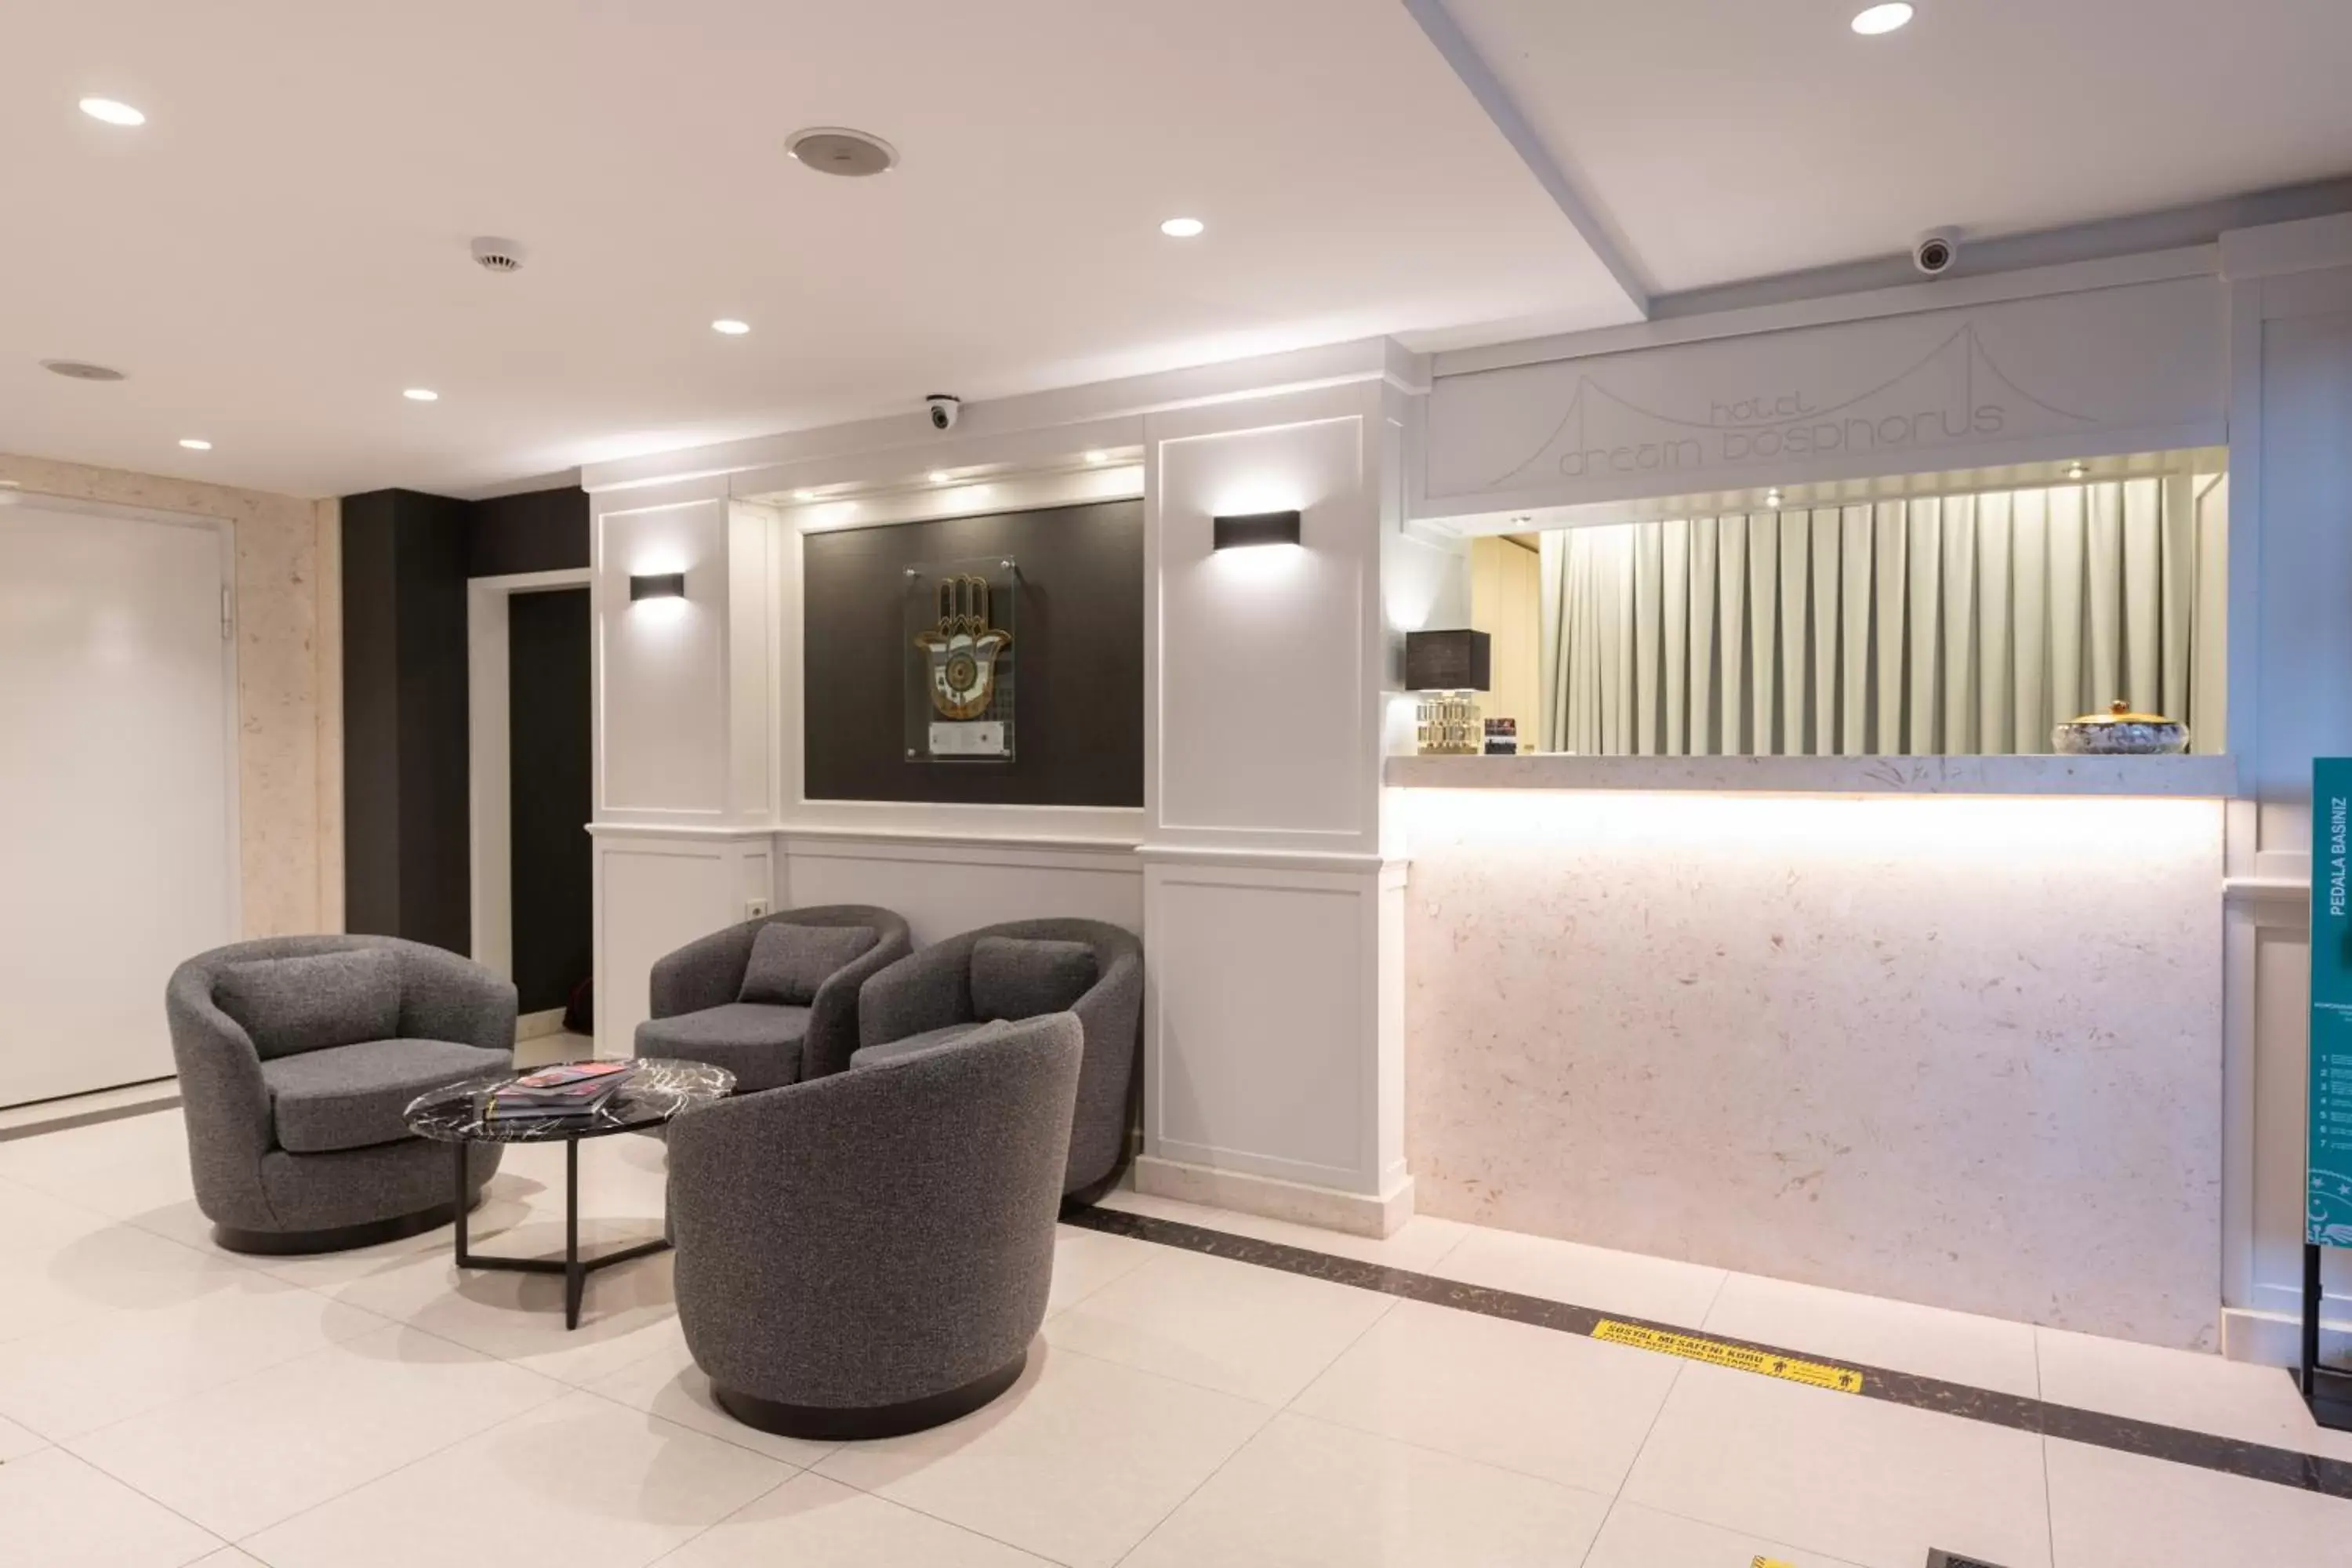 Lobby or reception, Lobby/Reception in Dream Bosphorus Hotel